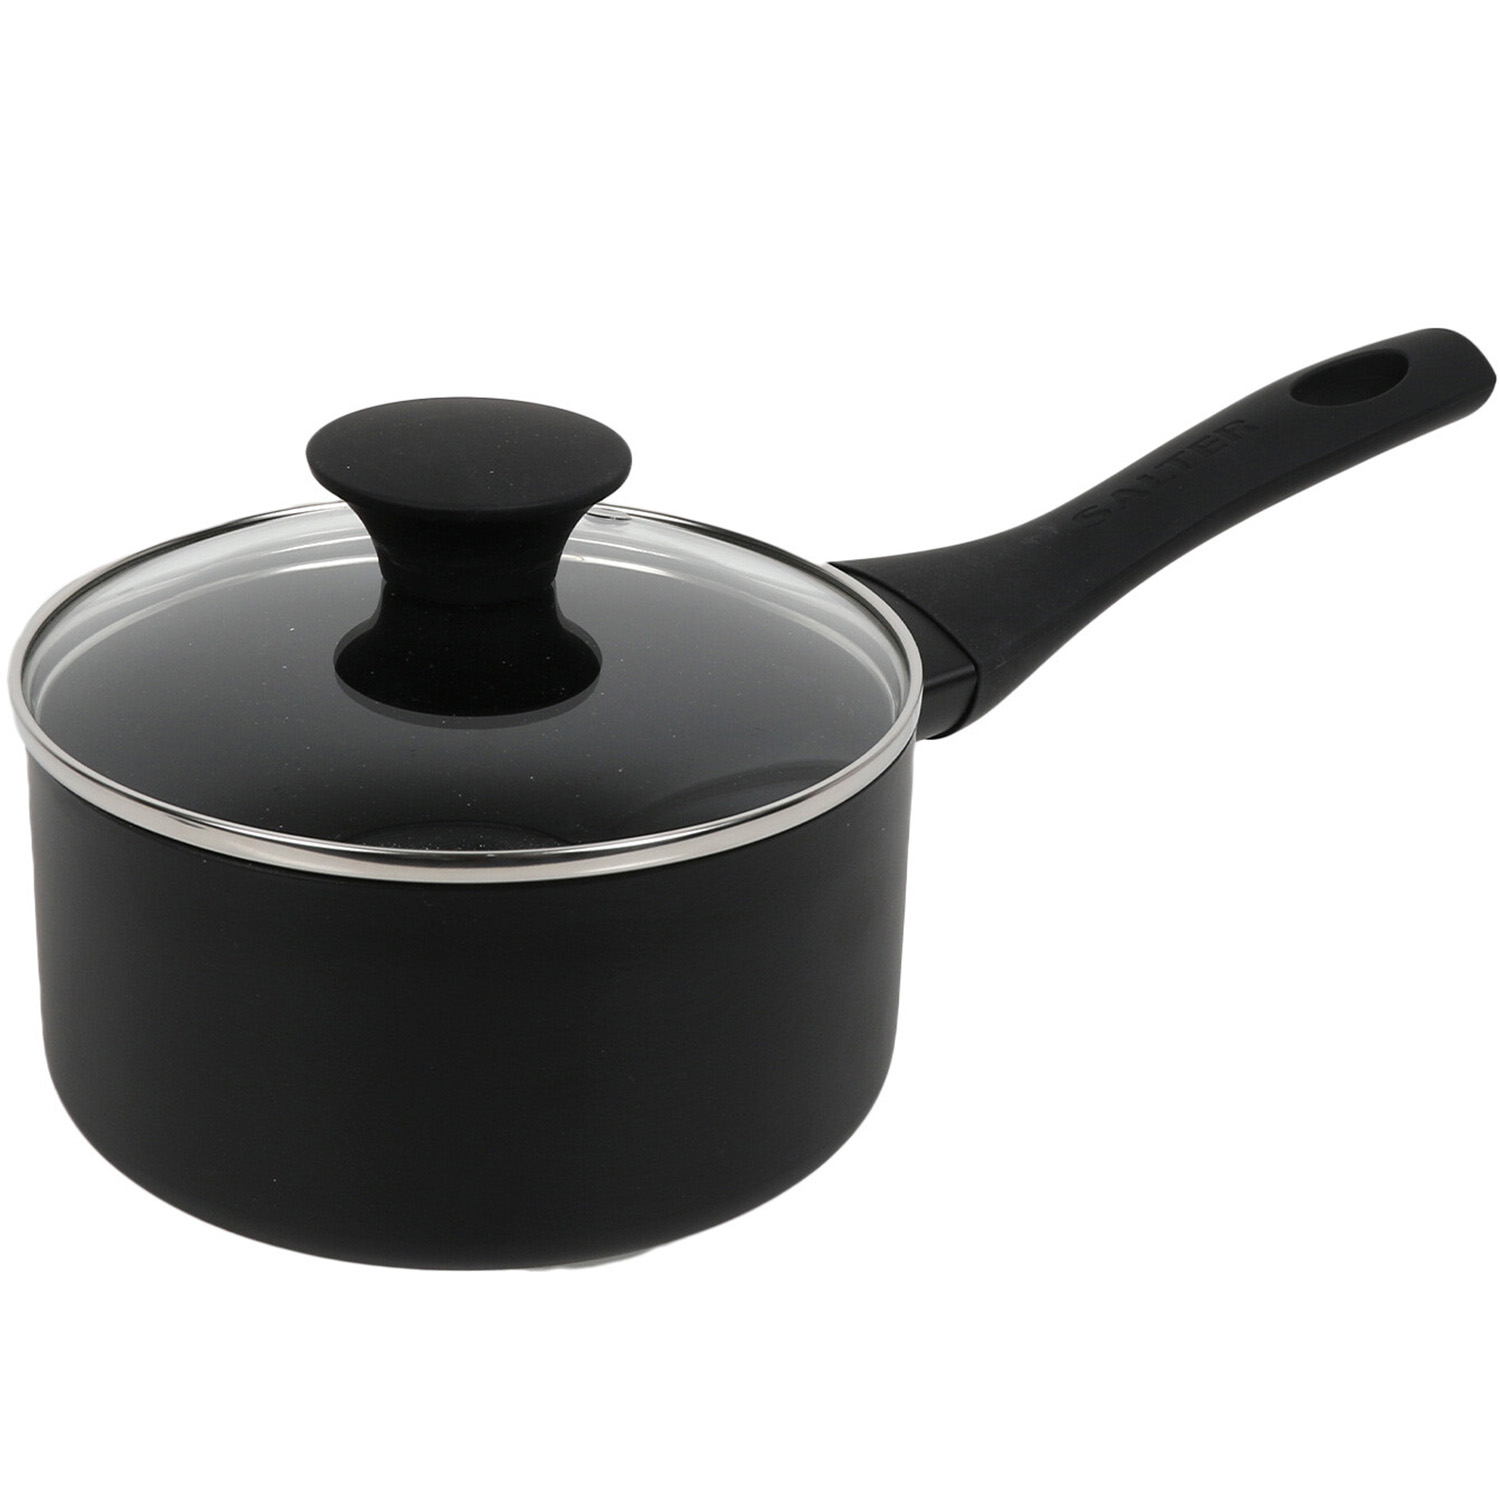 Salter 16cm Black Premium Essentials Saucepan Image 1